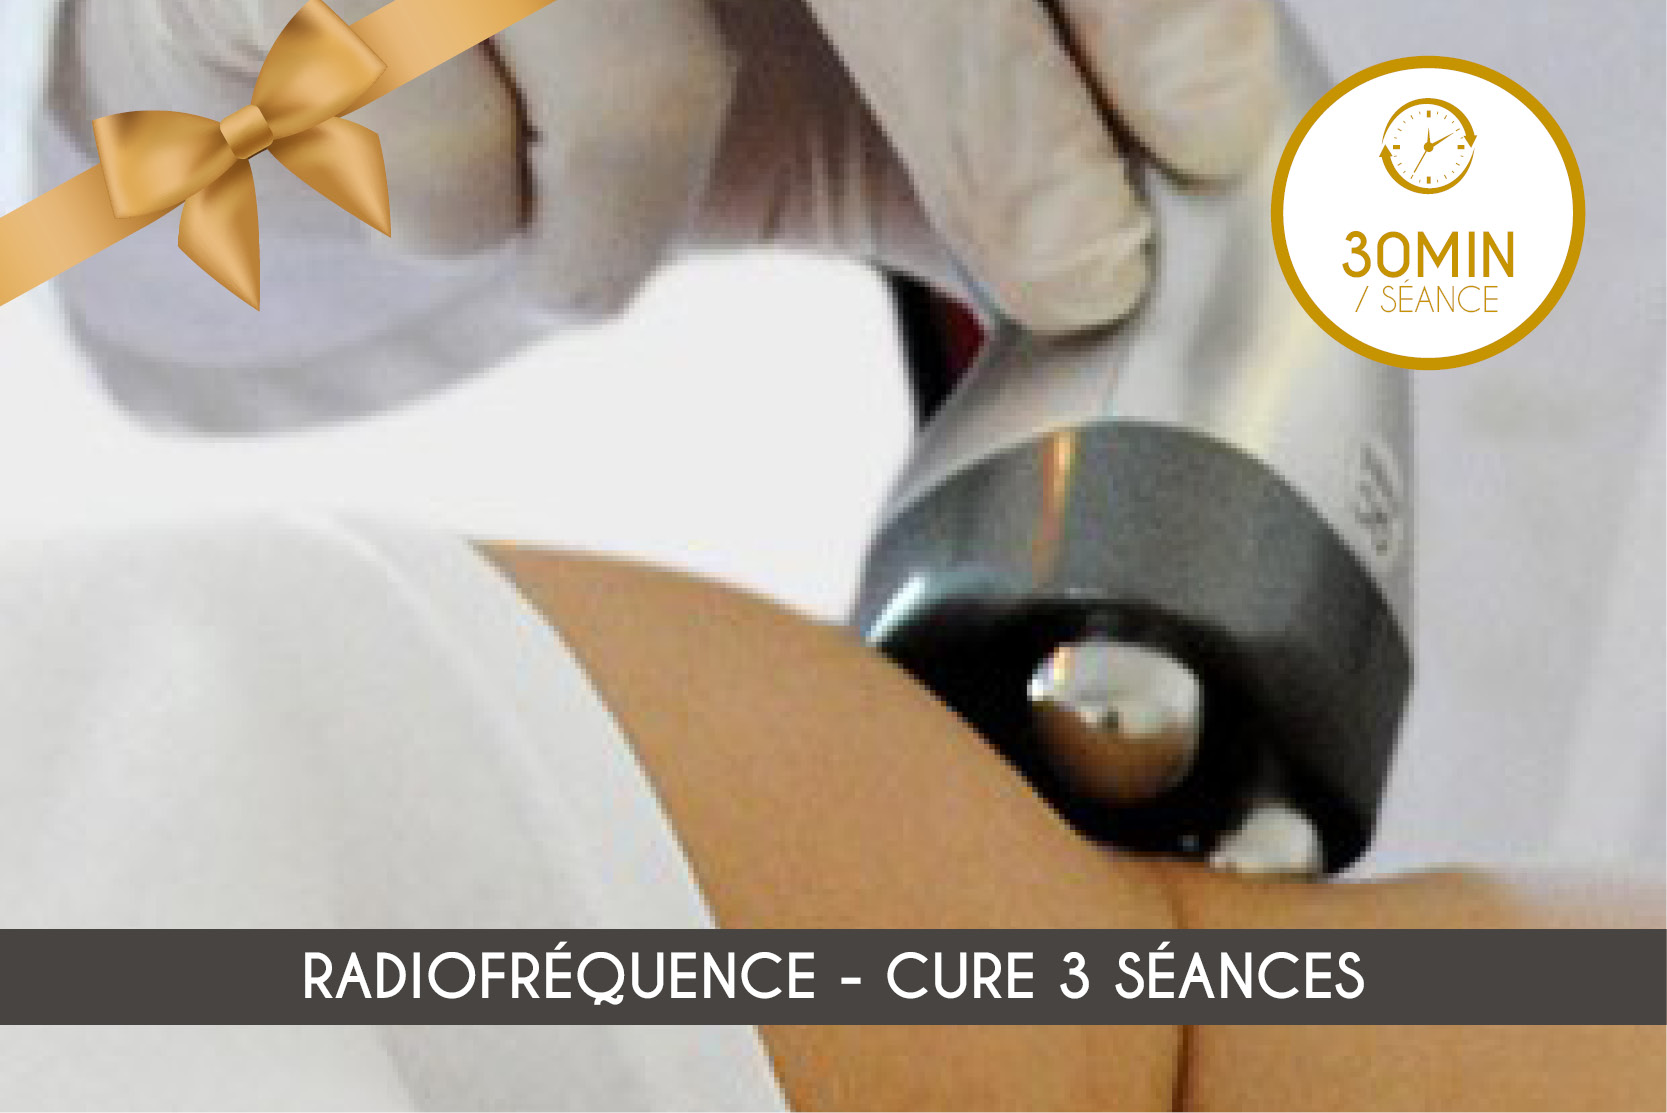 Radiofréquence - Cure 3 séances